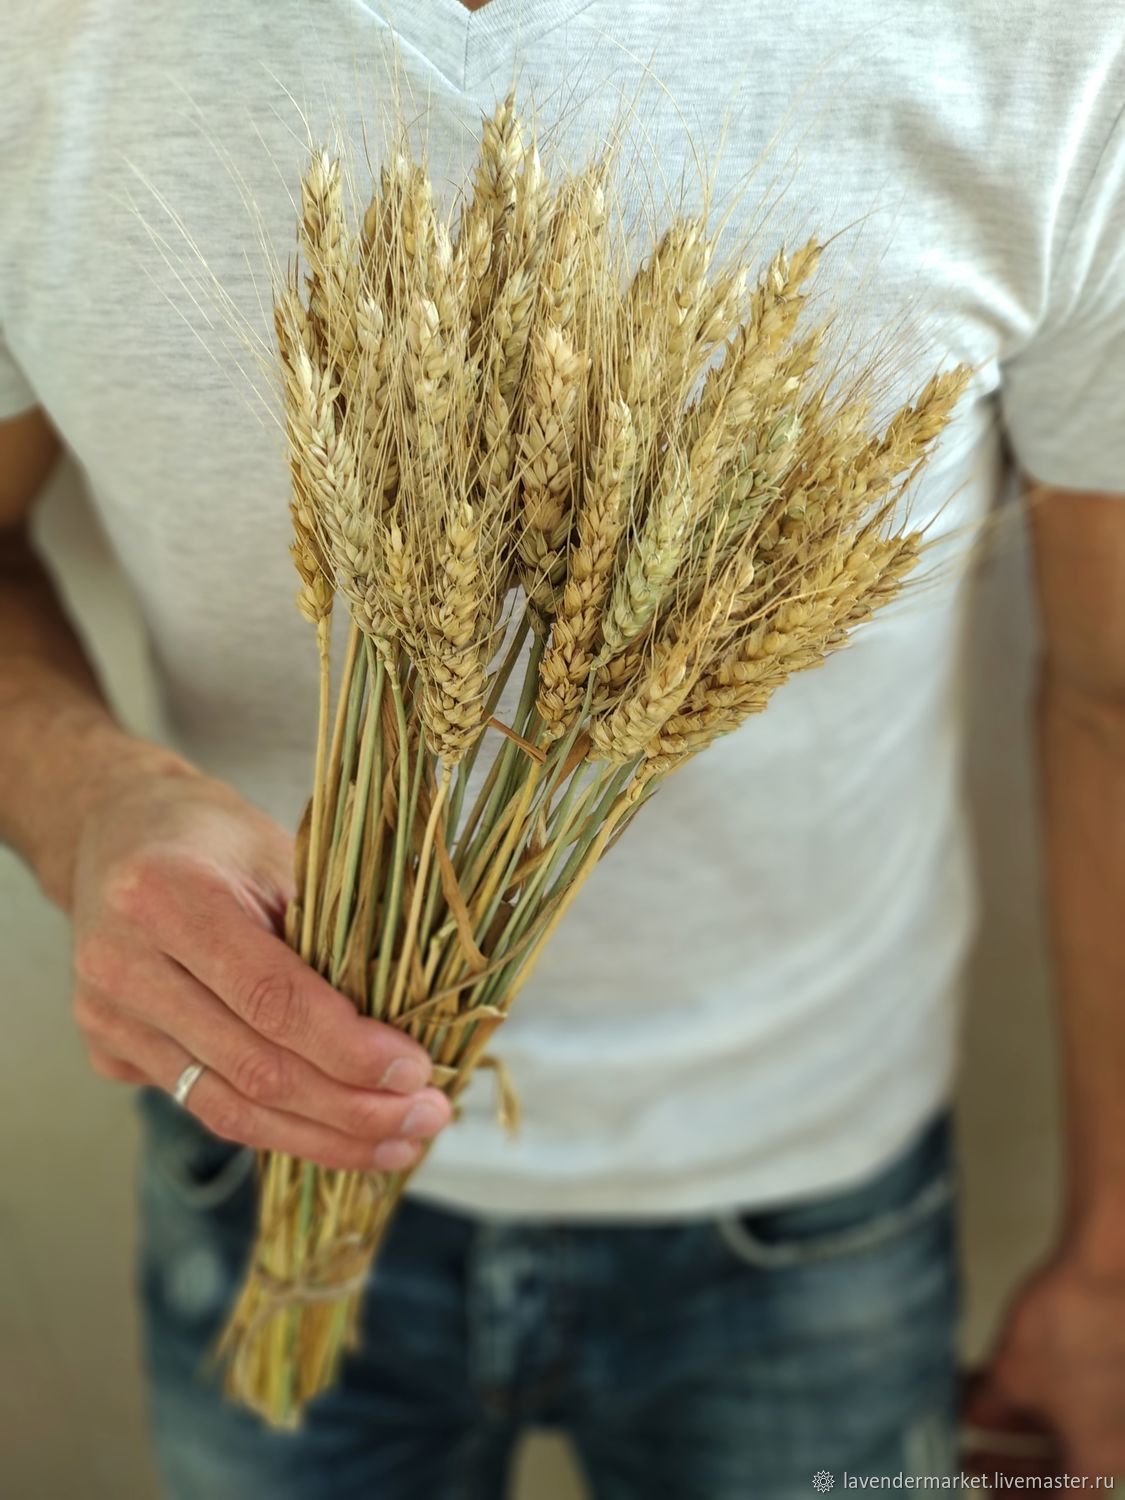 Где Можно Купить Дешевую Пшеницу